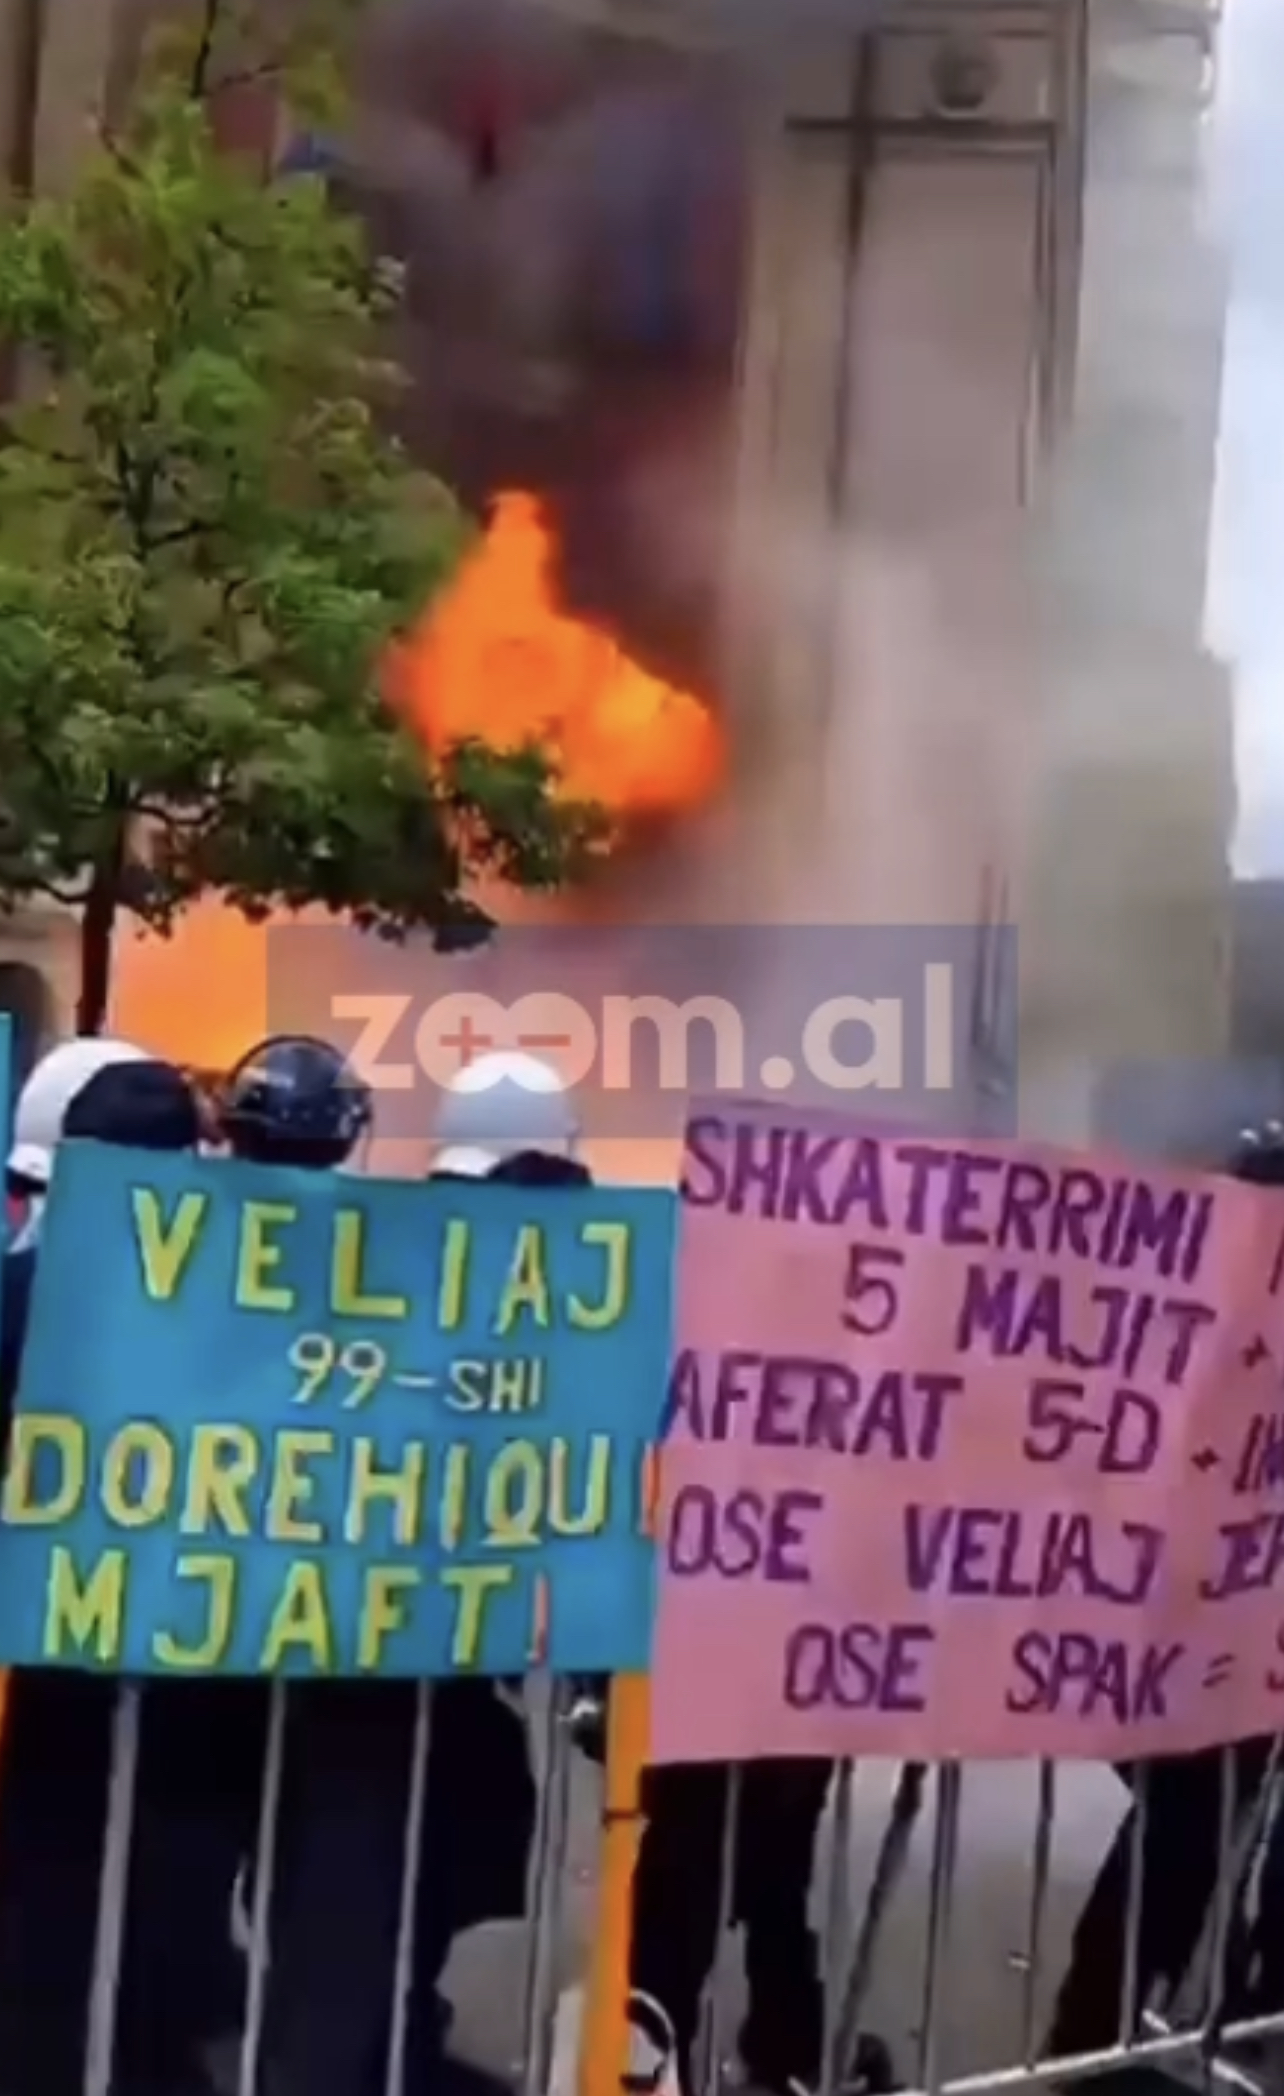 Bashkia e Tiranës u godit me “Molotov”, Policia arreston 3 protestues, disa të tjerë nën hetim